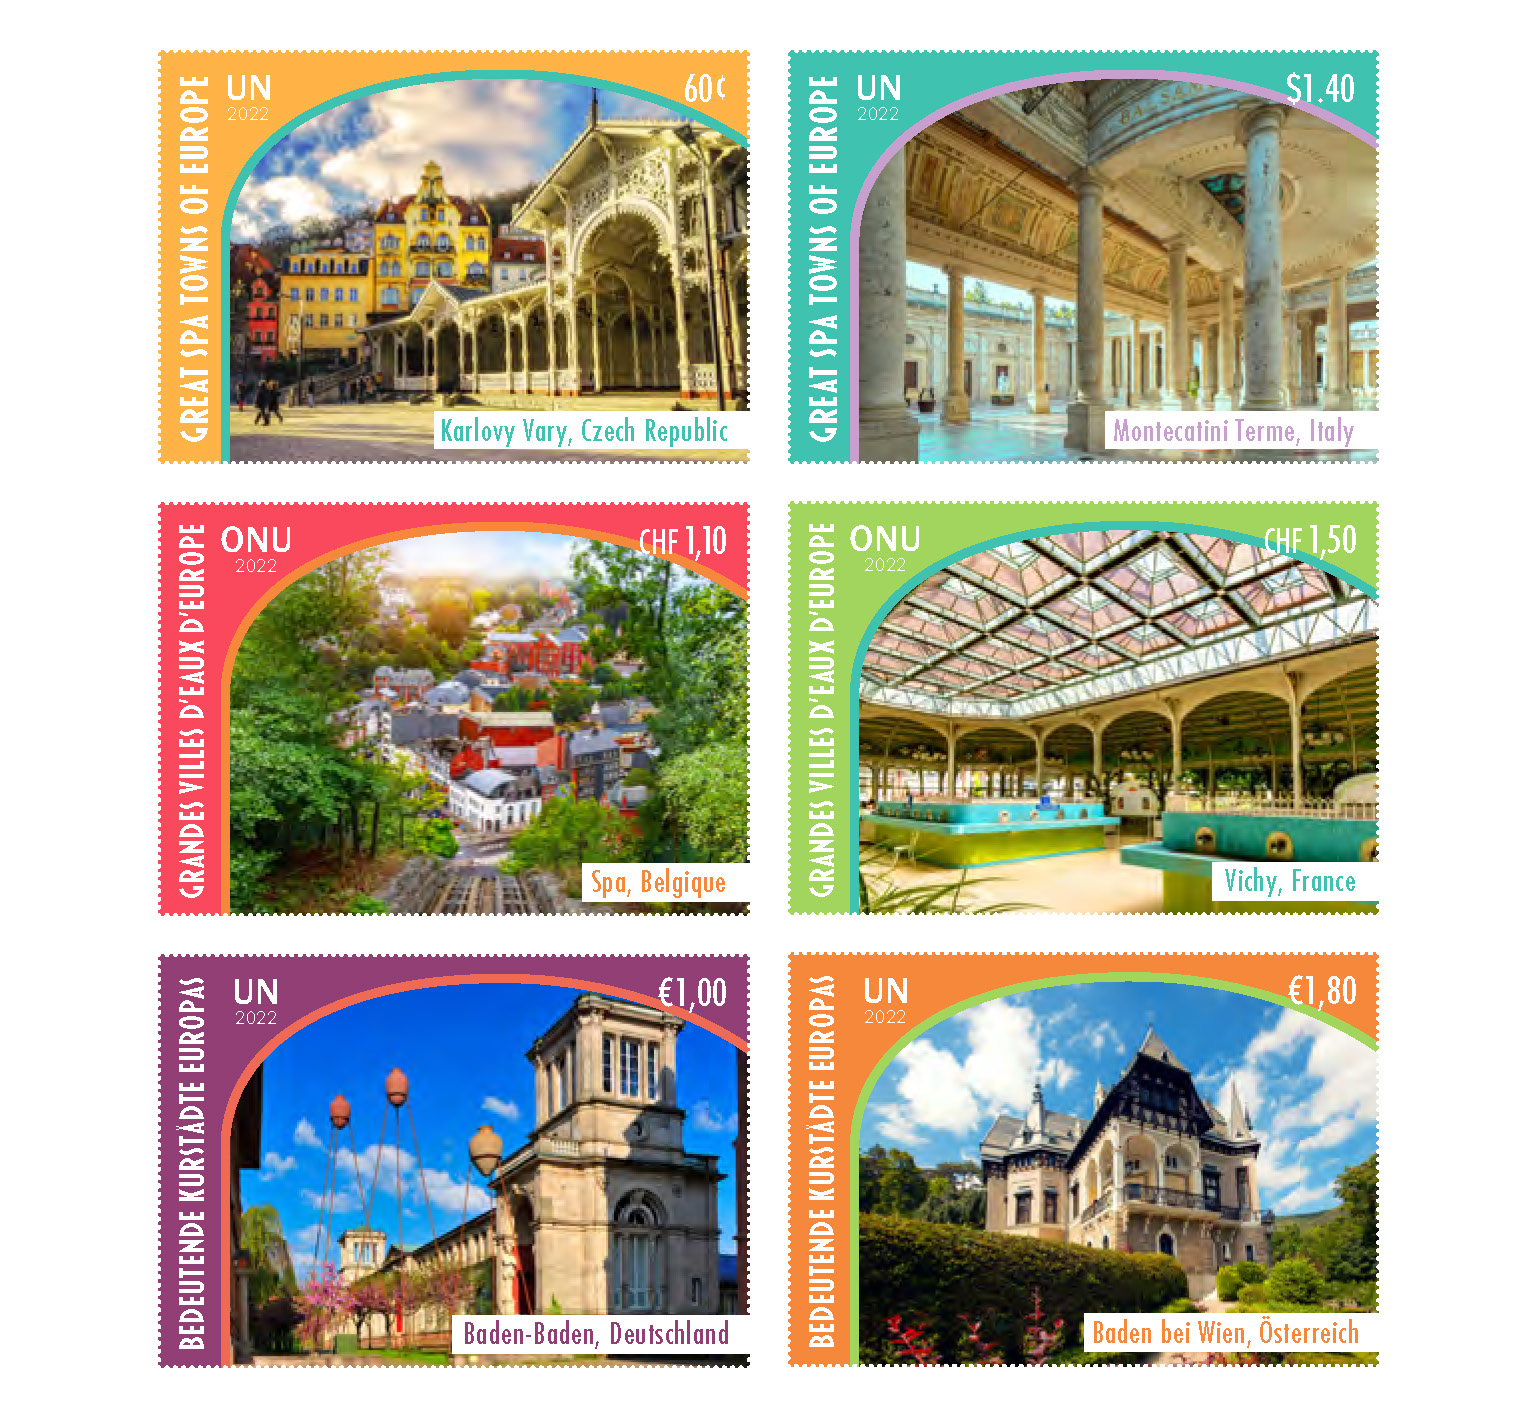 UN Stamps Postcard